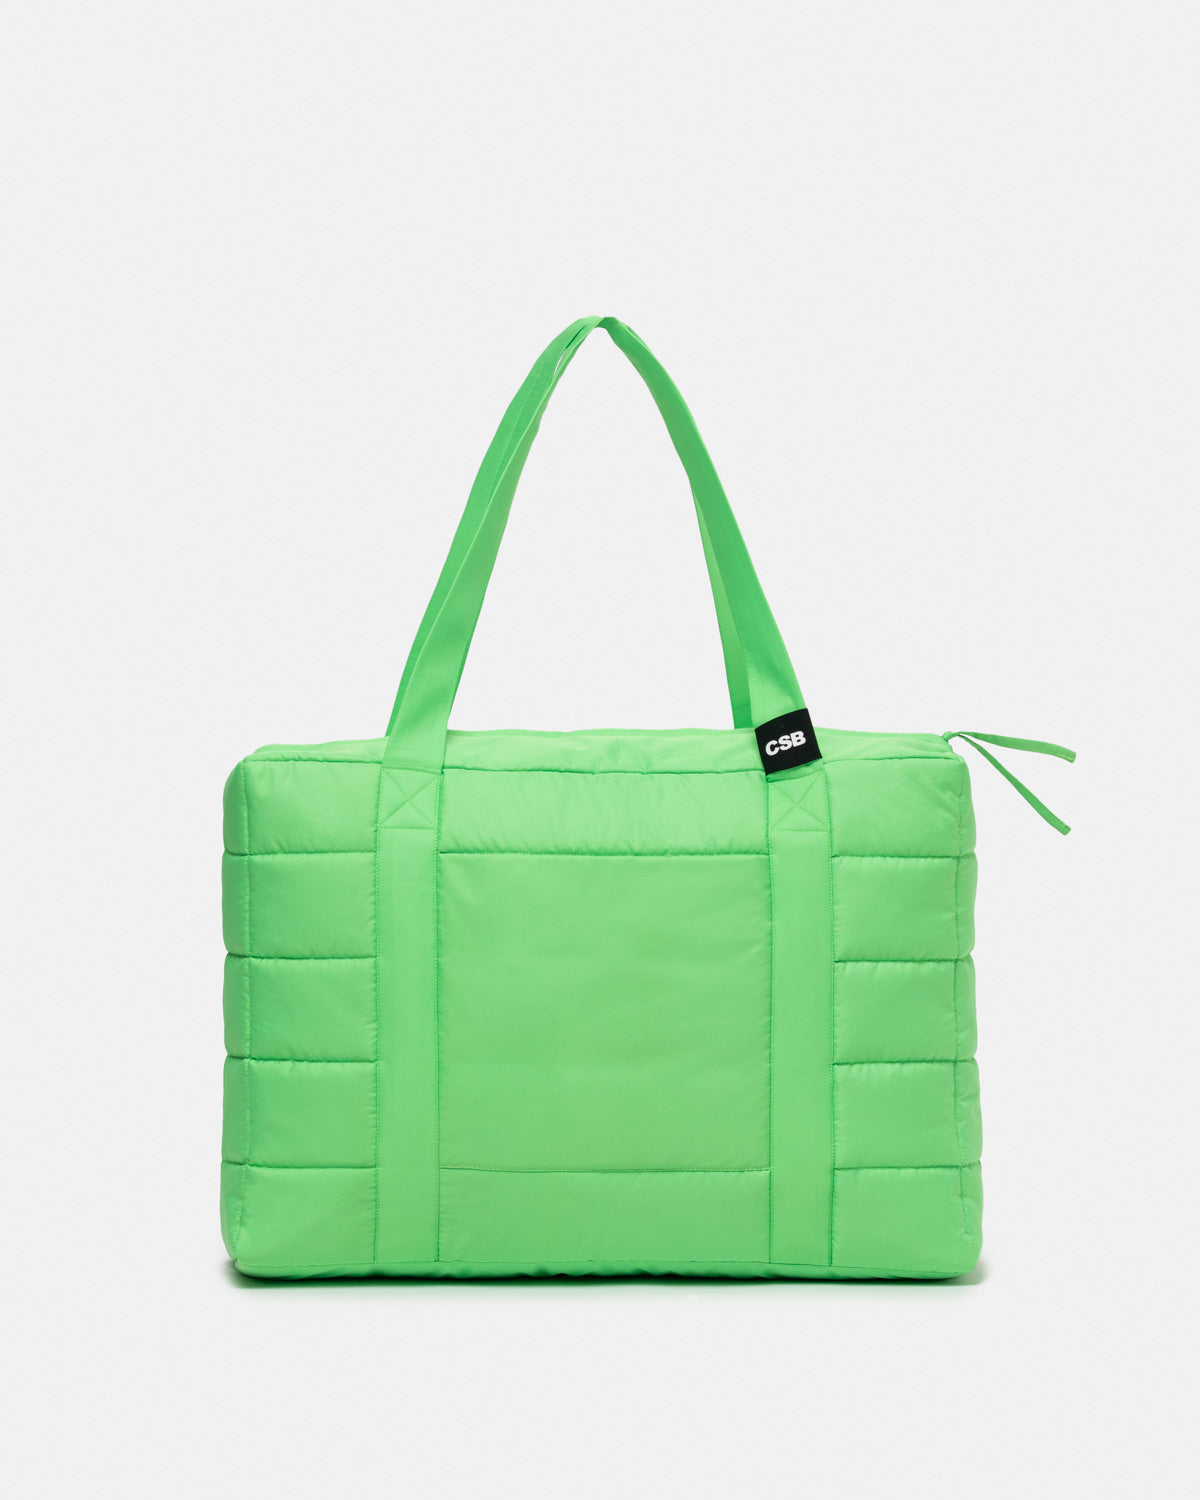 lime green bag